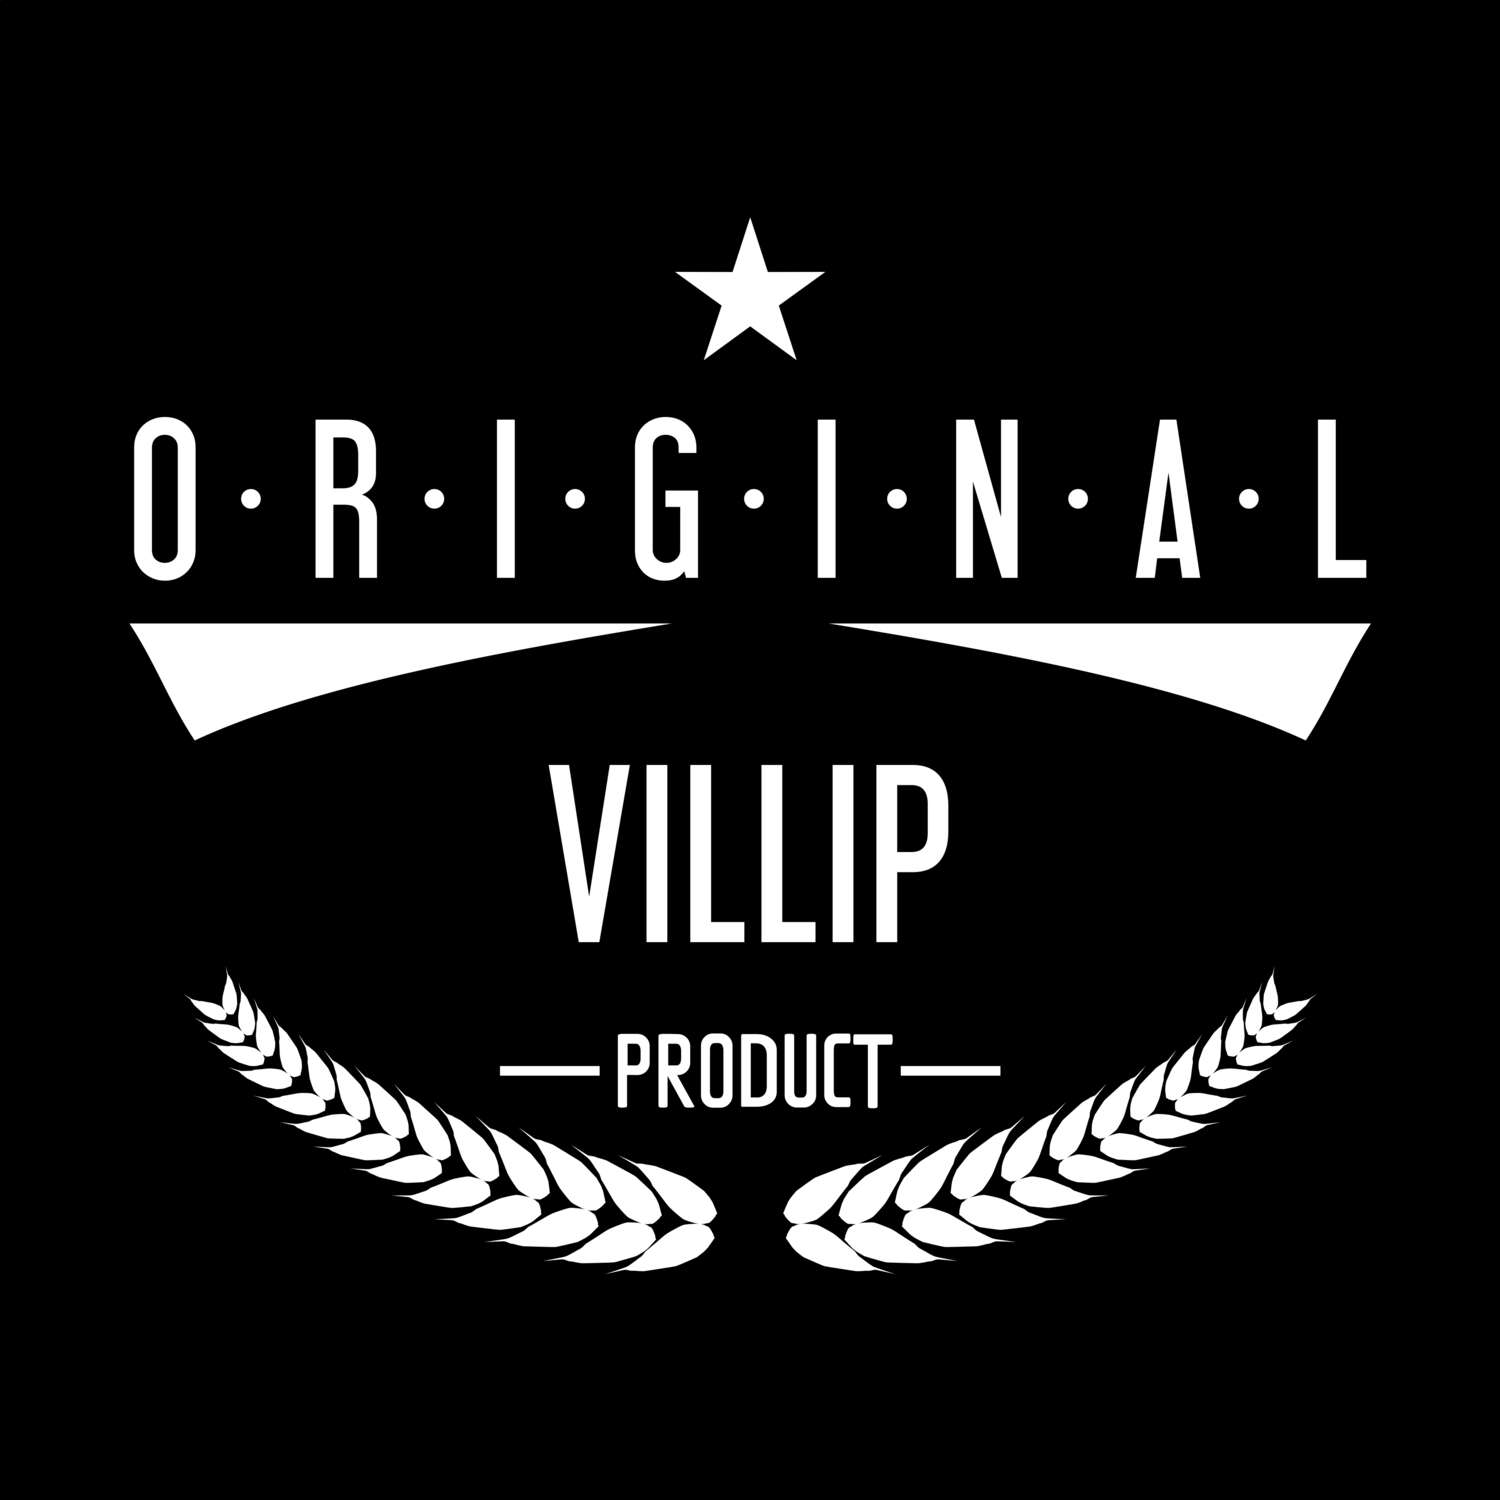 Villip T-Shirt »Original Product«